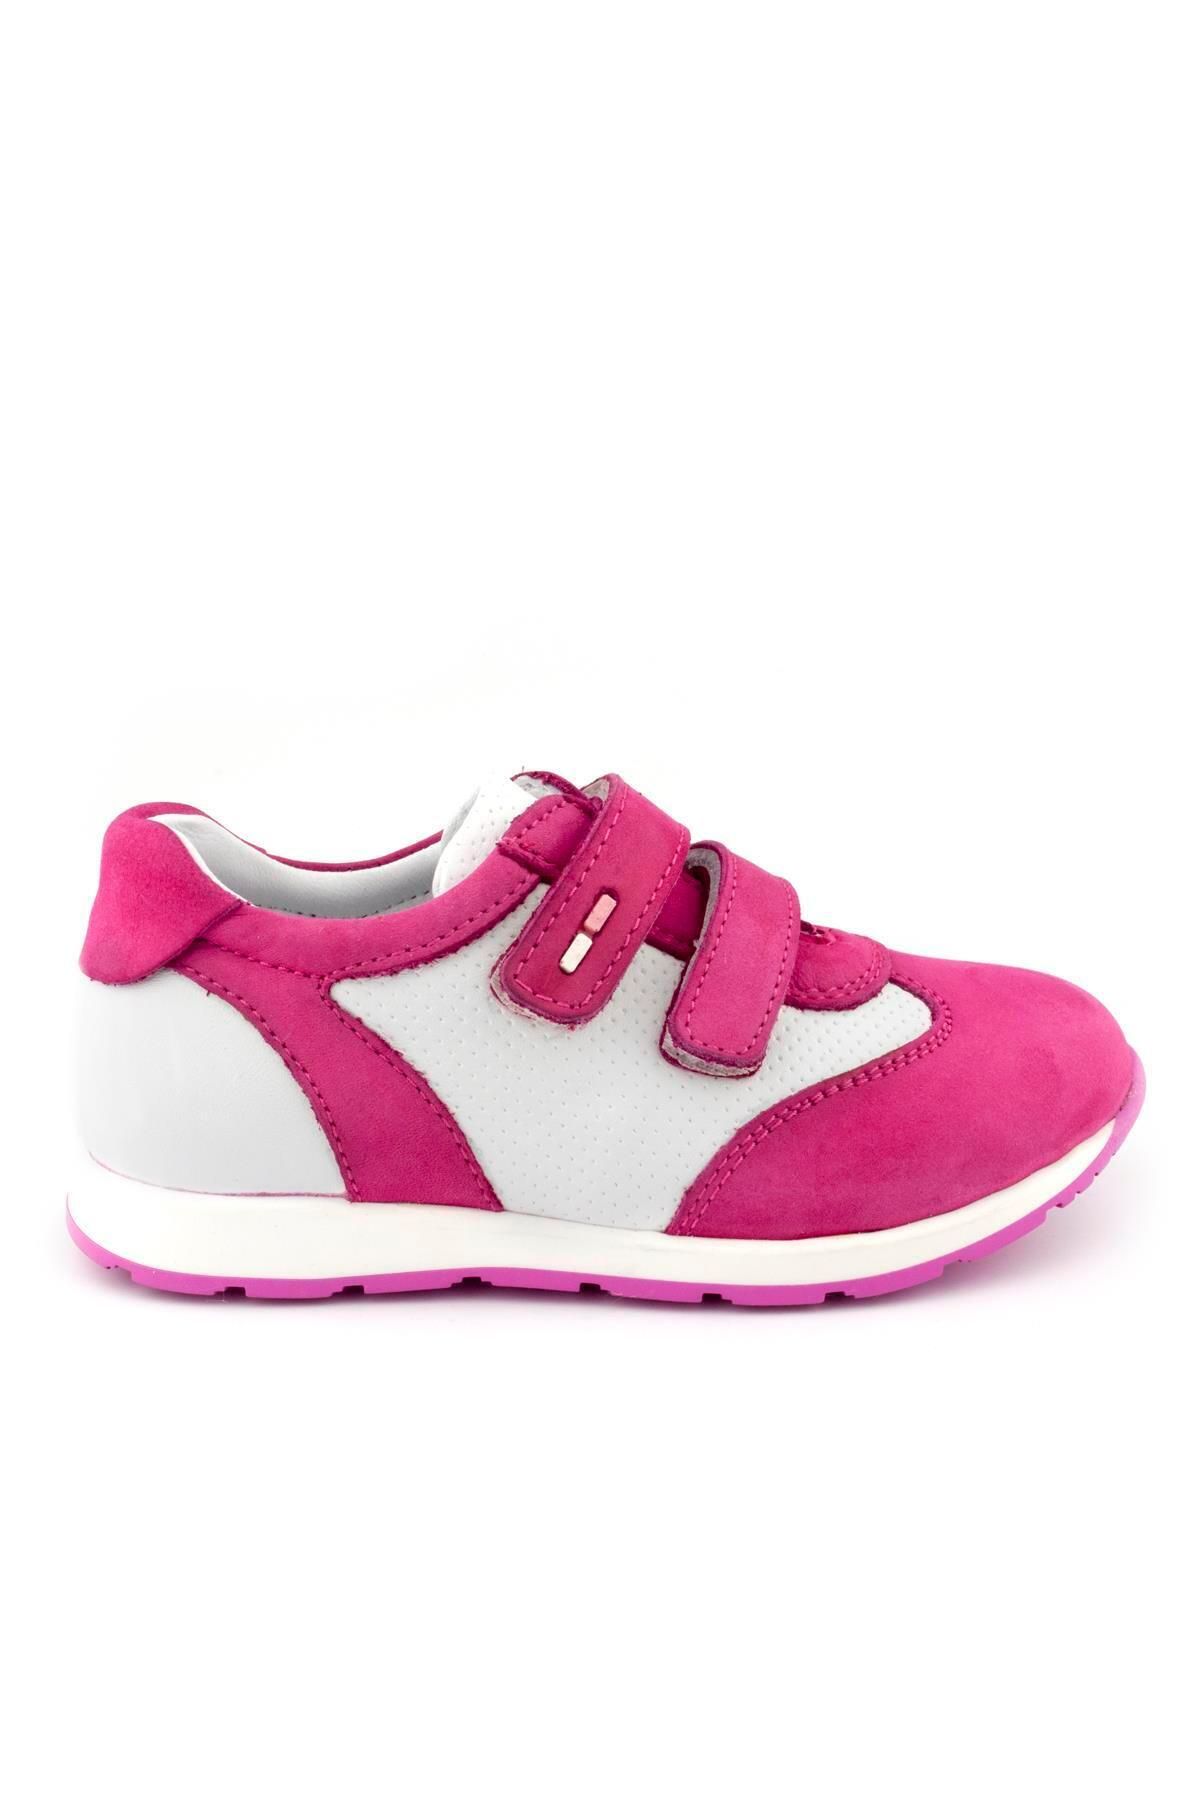 Cici Bebe Ayakkabı Hakiki Deri Fuşya Beyaz Nubuk Kız Çocuk Günlük Spor Ayakkabı